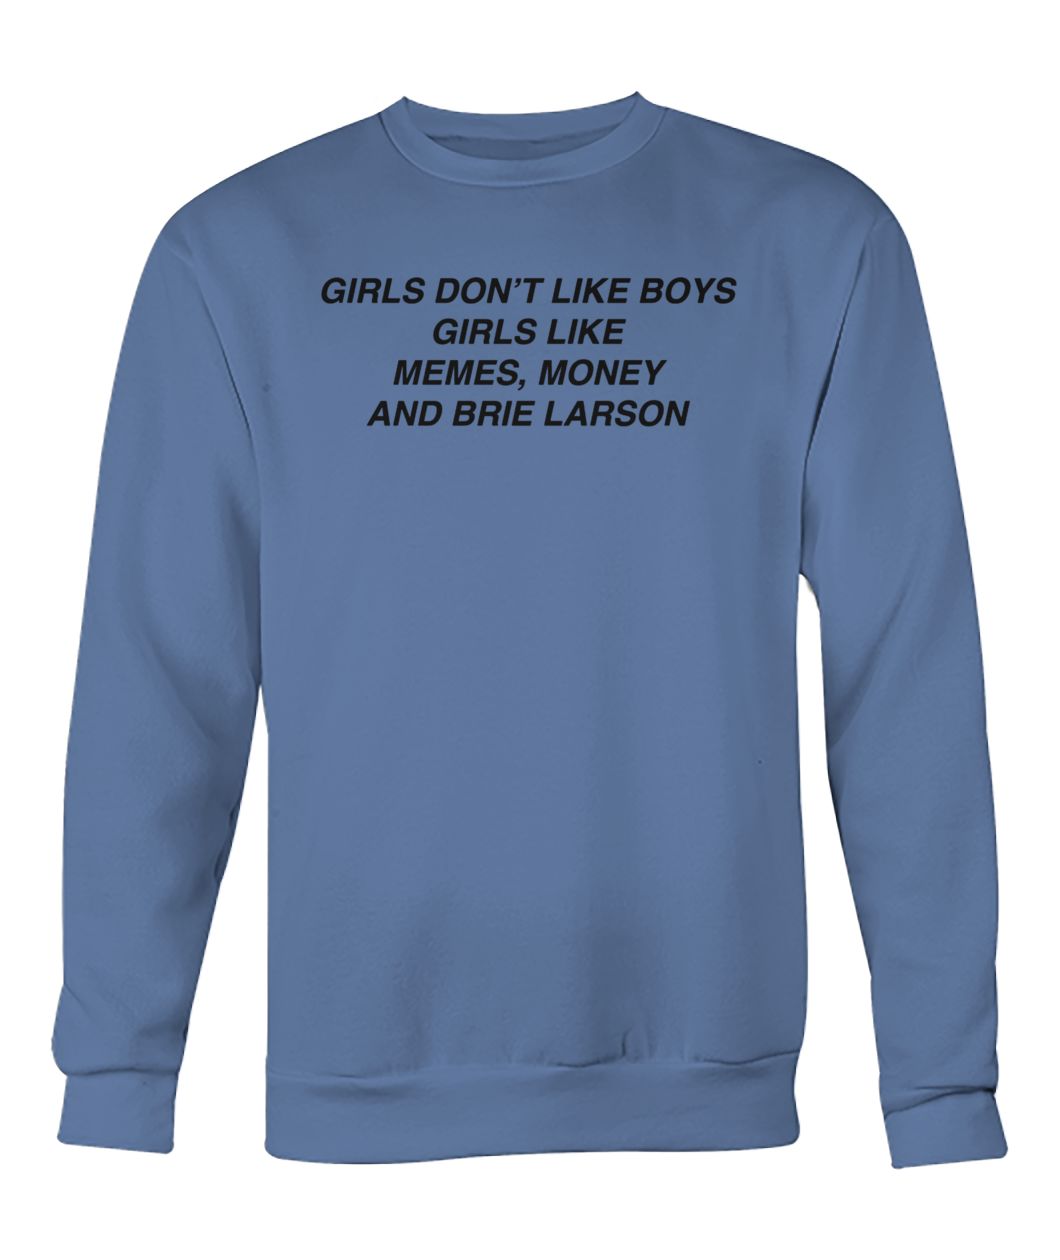 Girls like memes money and brie larson crew neck sweatshirt